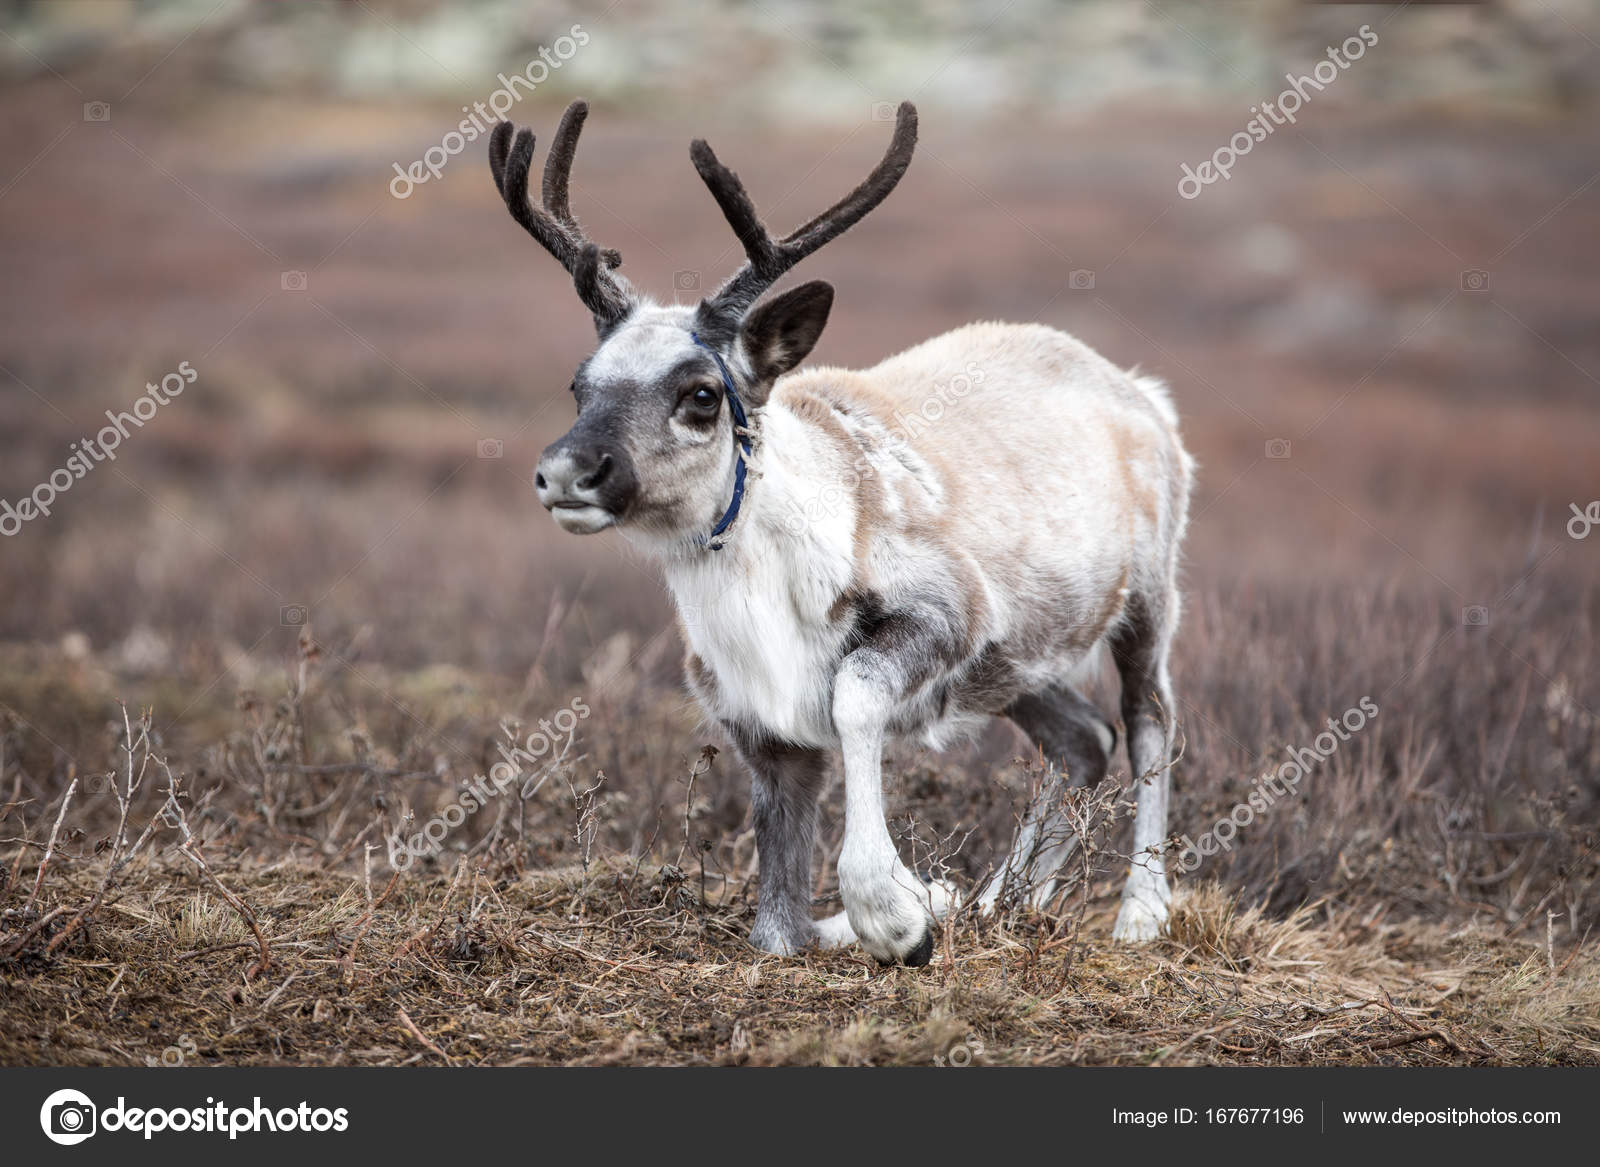 depositphotos_167677196-stock-photo-cute-baby-reindeer-getting-up.jpg